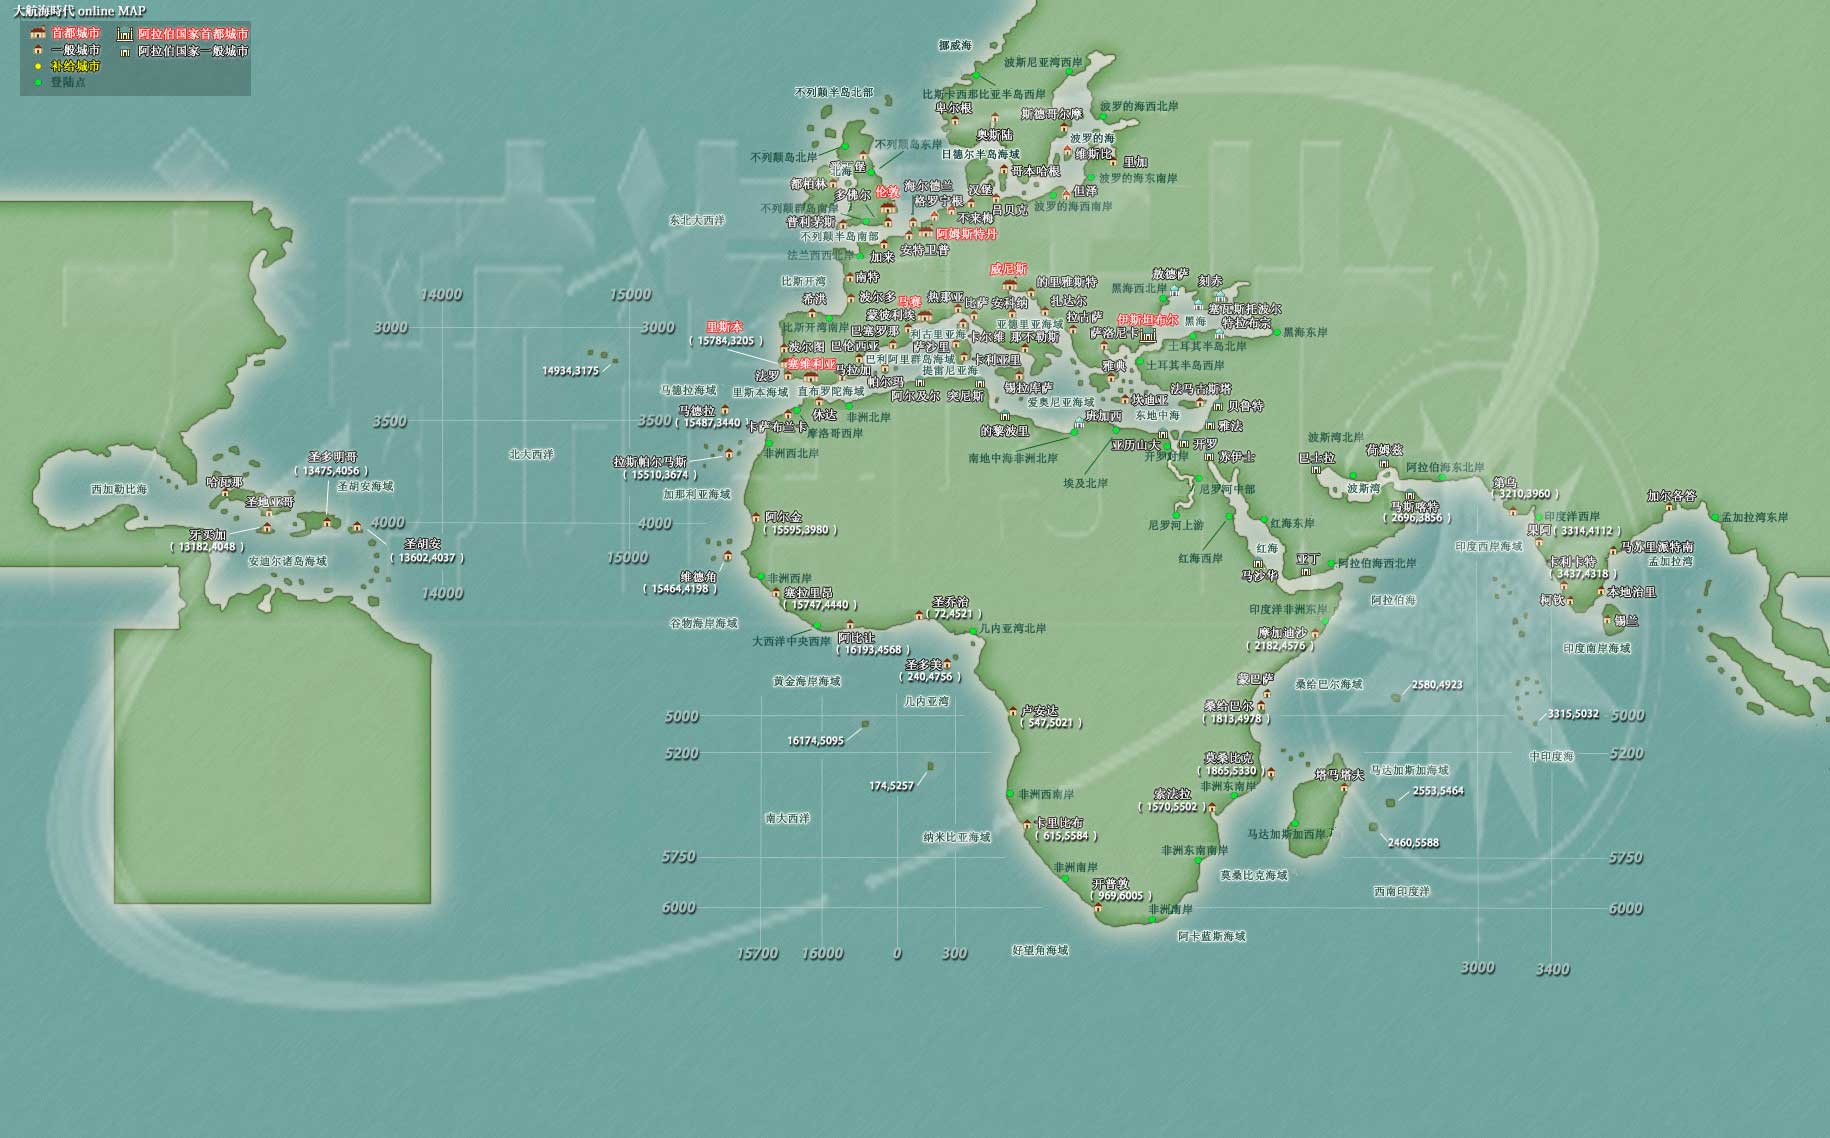 世界地图占领游戏图片